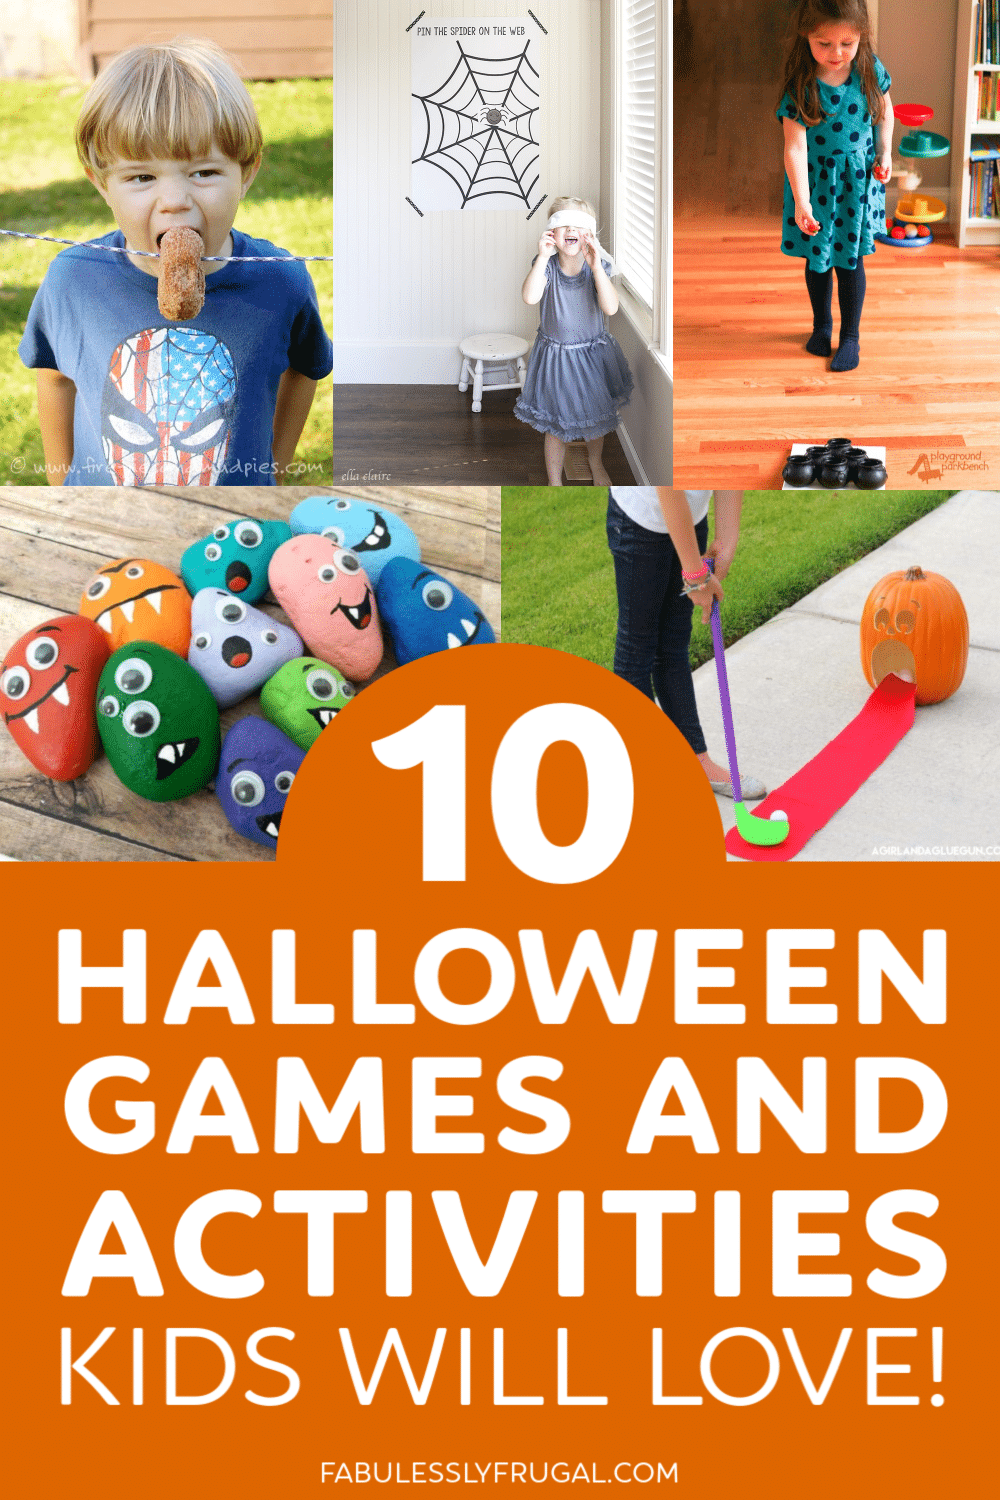 Fun Halloween activity ideas